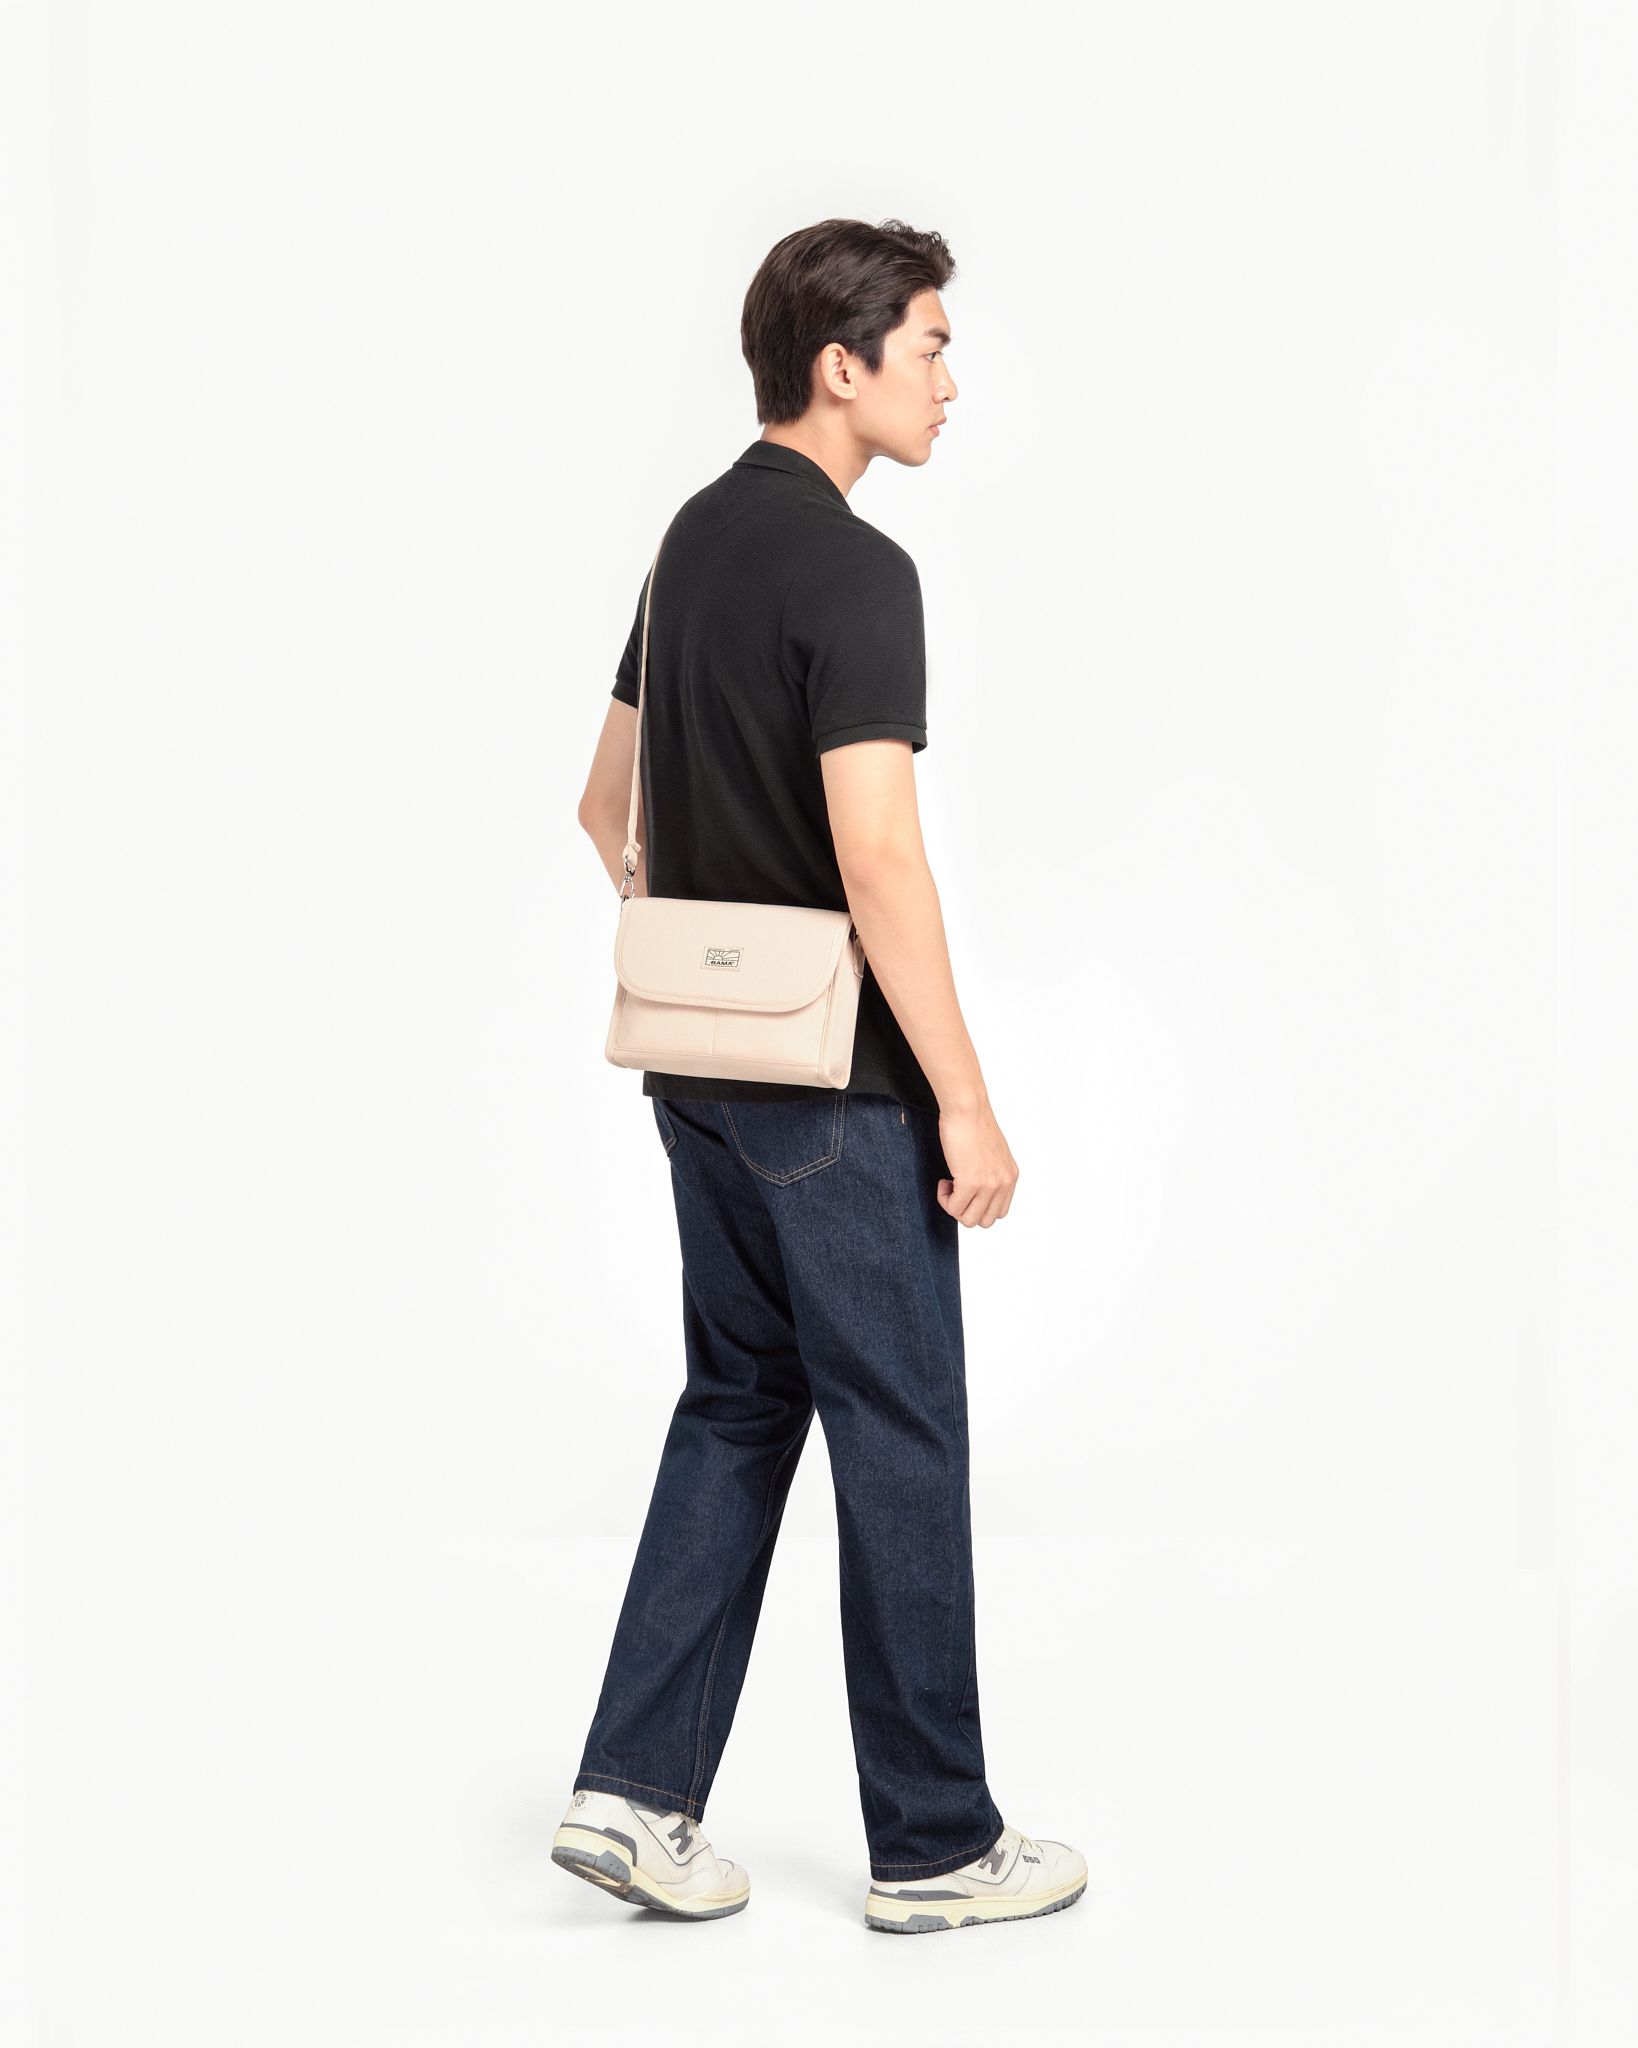  New Basic Shoulder Bag NB207 